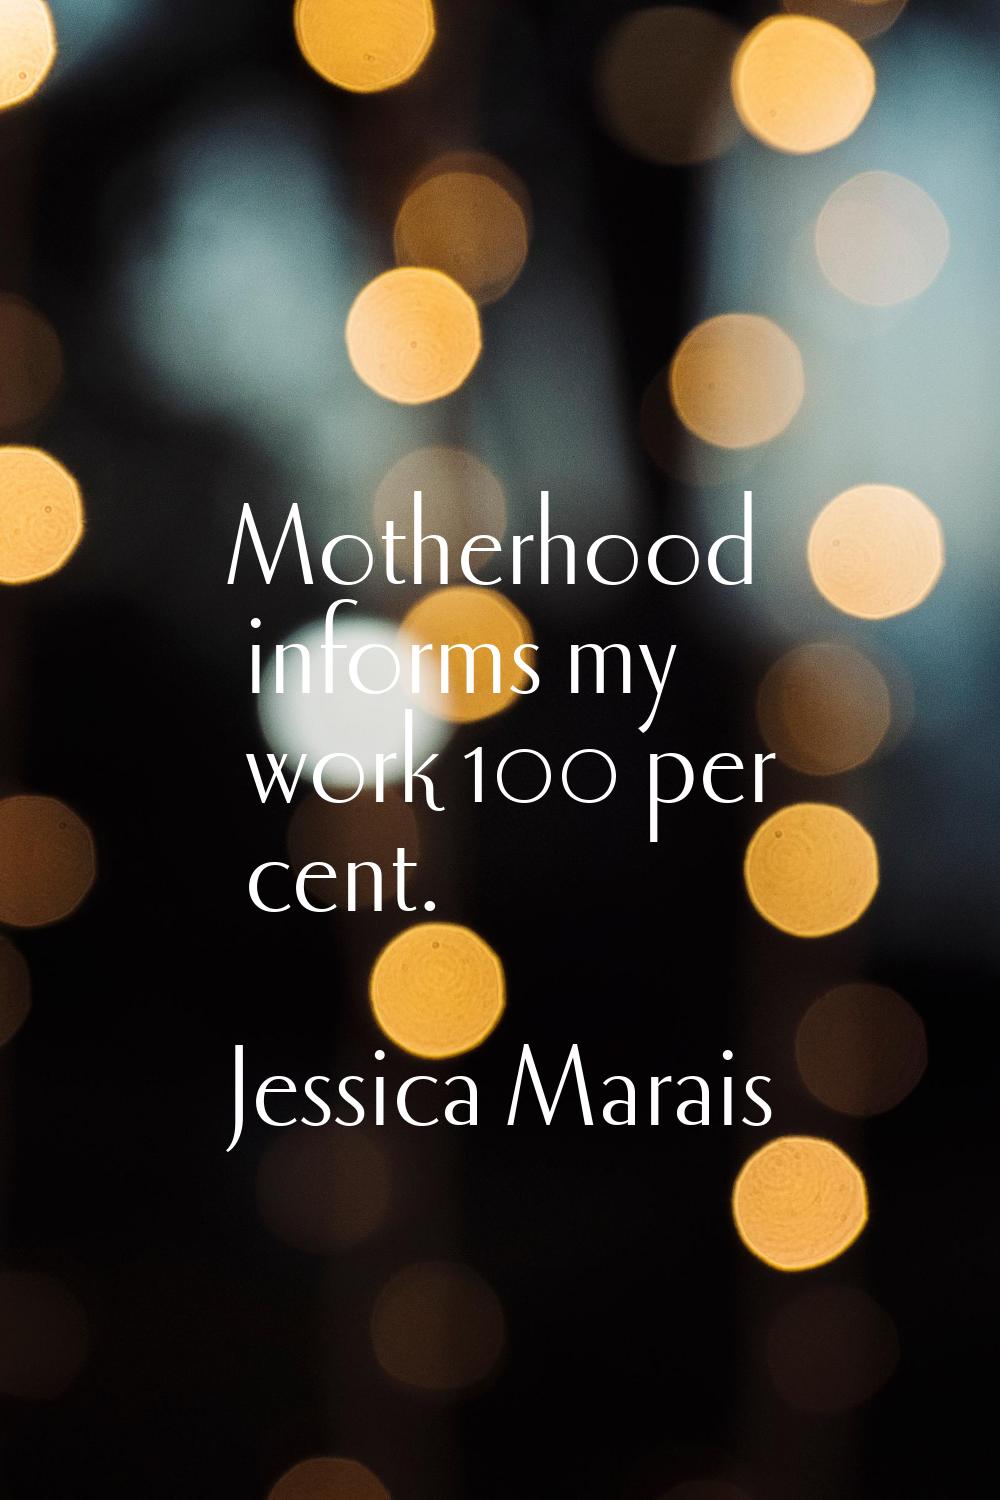 Motherhood informs my work 100 per cent.